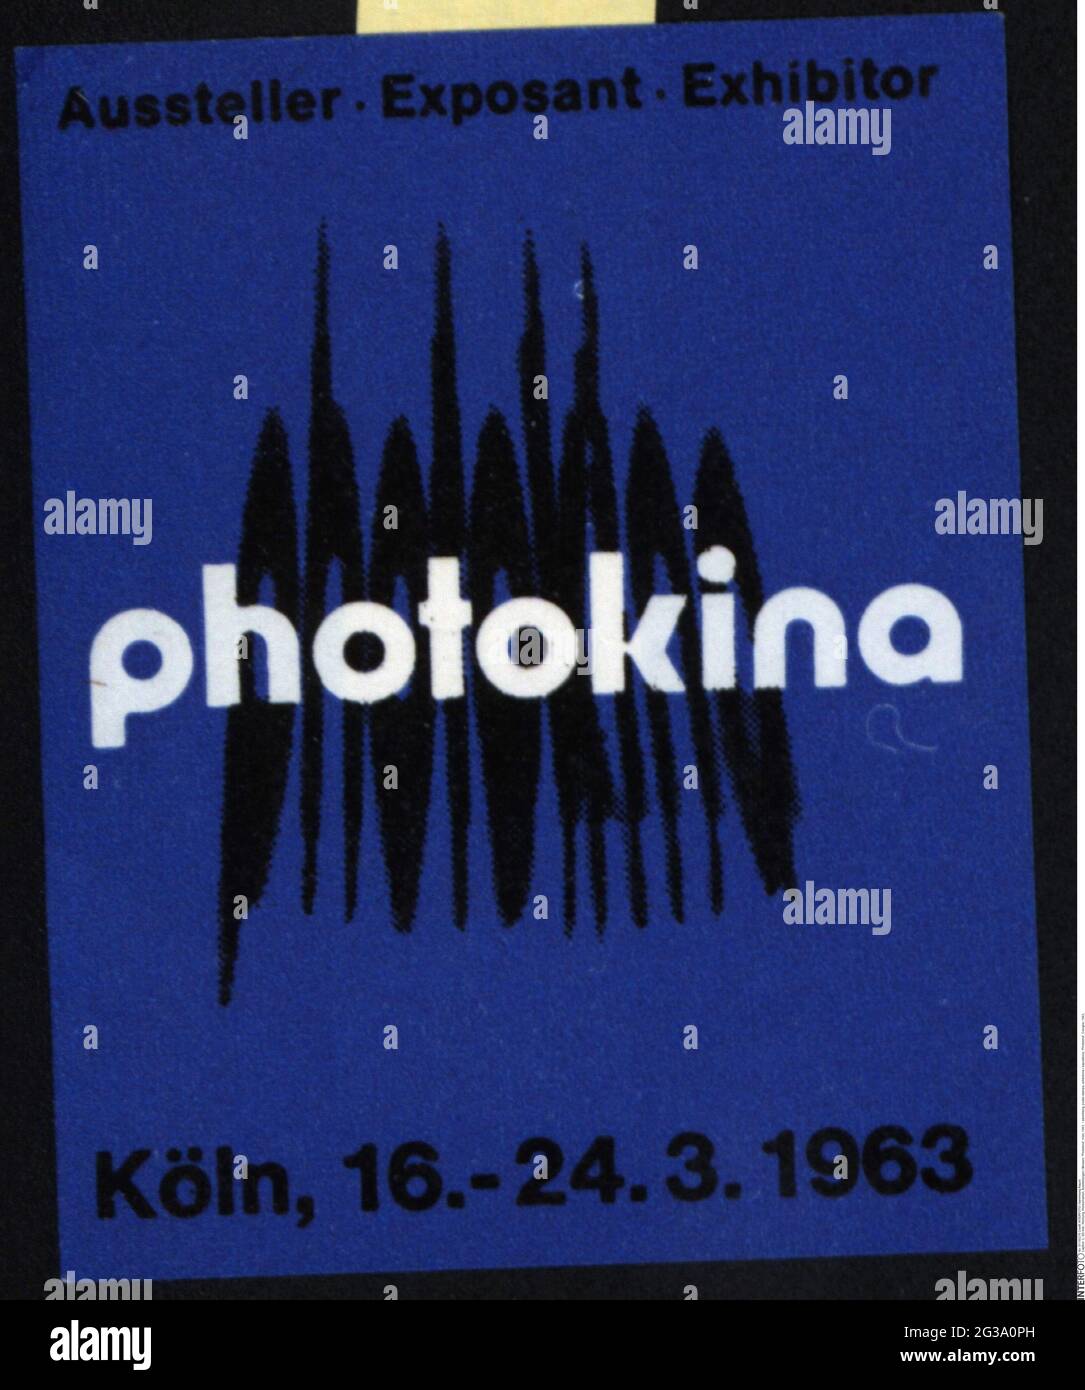 Publicité, timbres-affiches, expositions / expositions, « Photokina », Cologne, 1963, INFO-AUTORISATION-DROITS-SUPPLÉMENTAIRES-NON-DISPONIBLE Banque D'Images